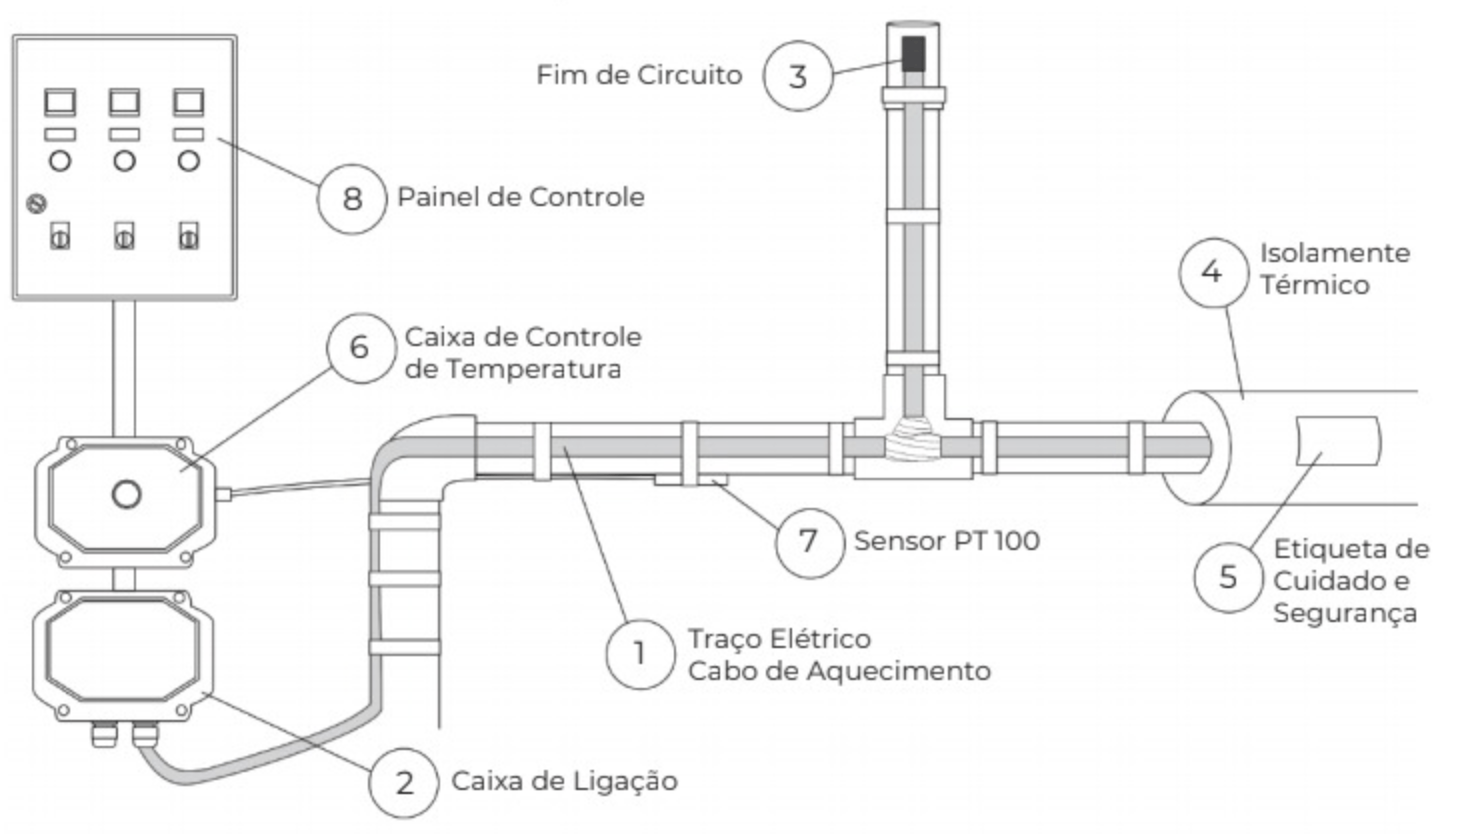 Imagem do funcionamento de um sistema de traço elétrico